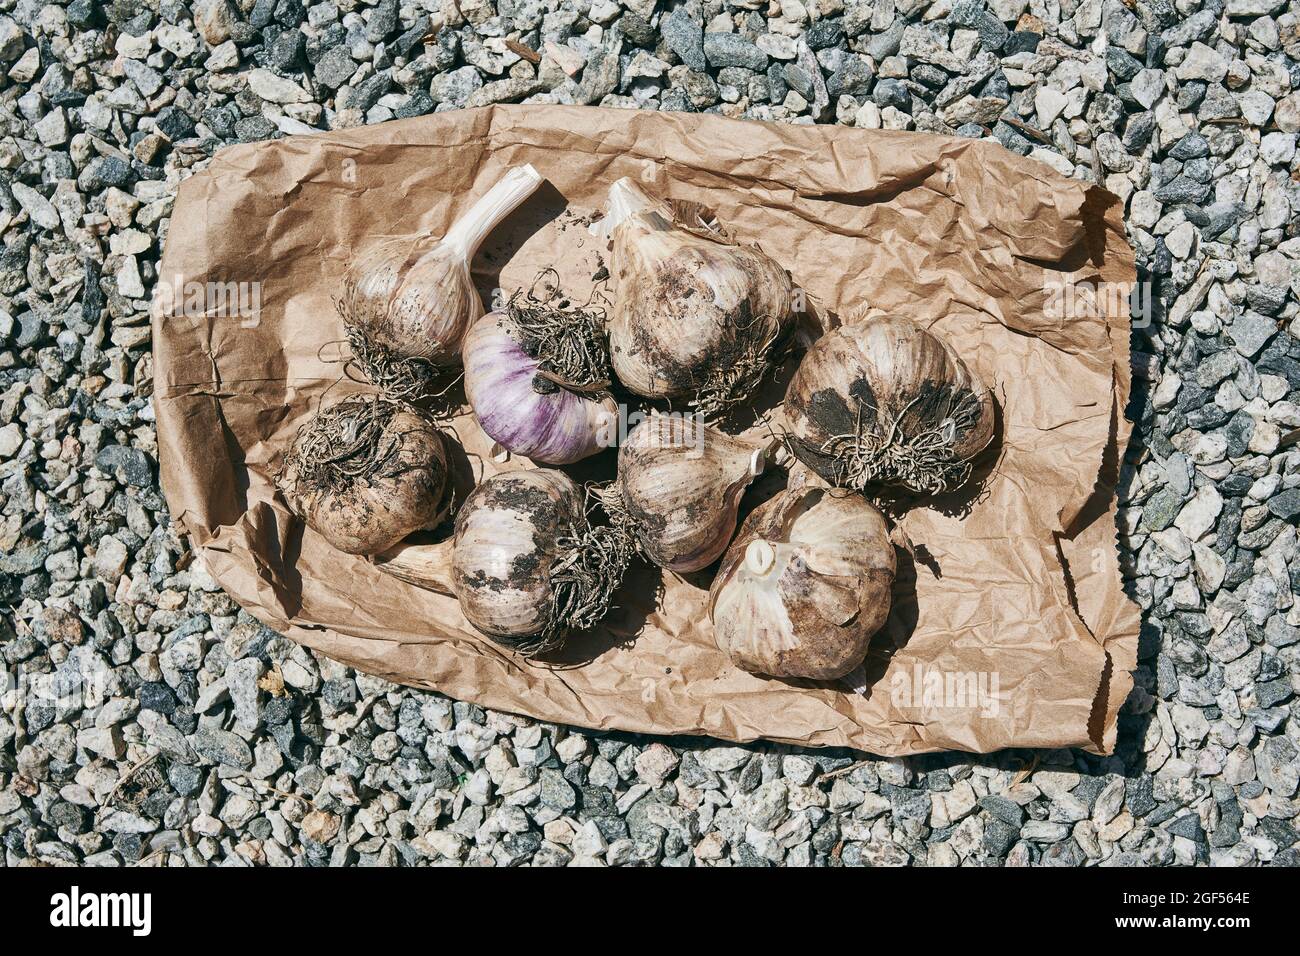 Mire hacia abajo en un grupo de bulbos de ajo recién cosechados en una bolsa de papel marrón Foto de stock